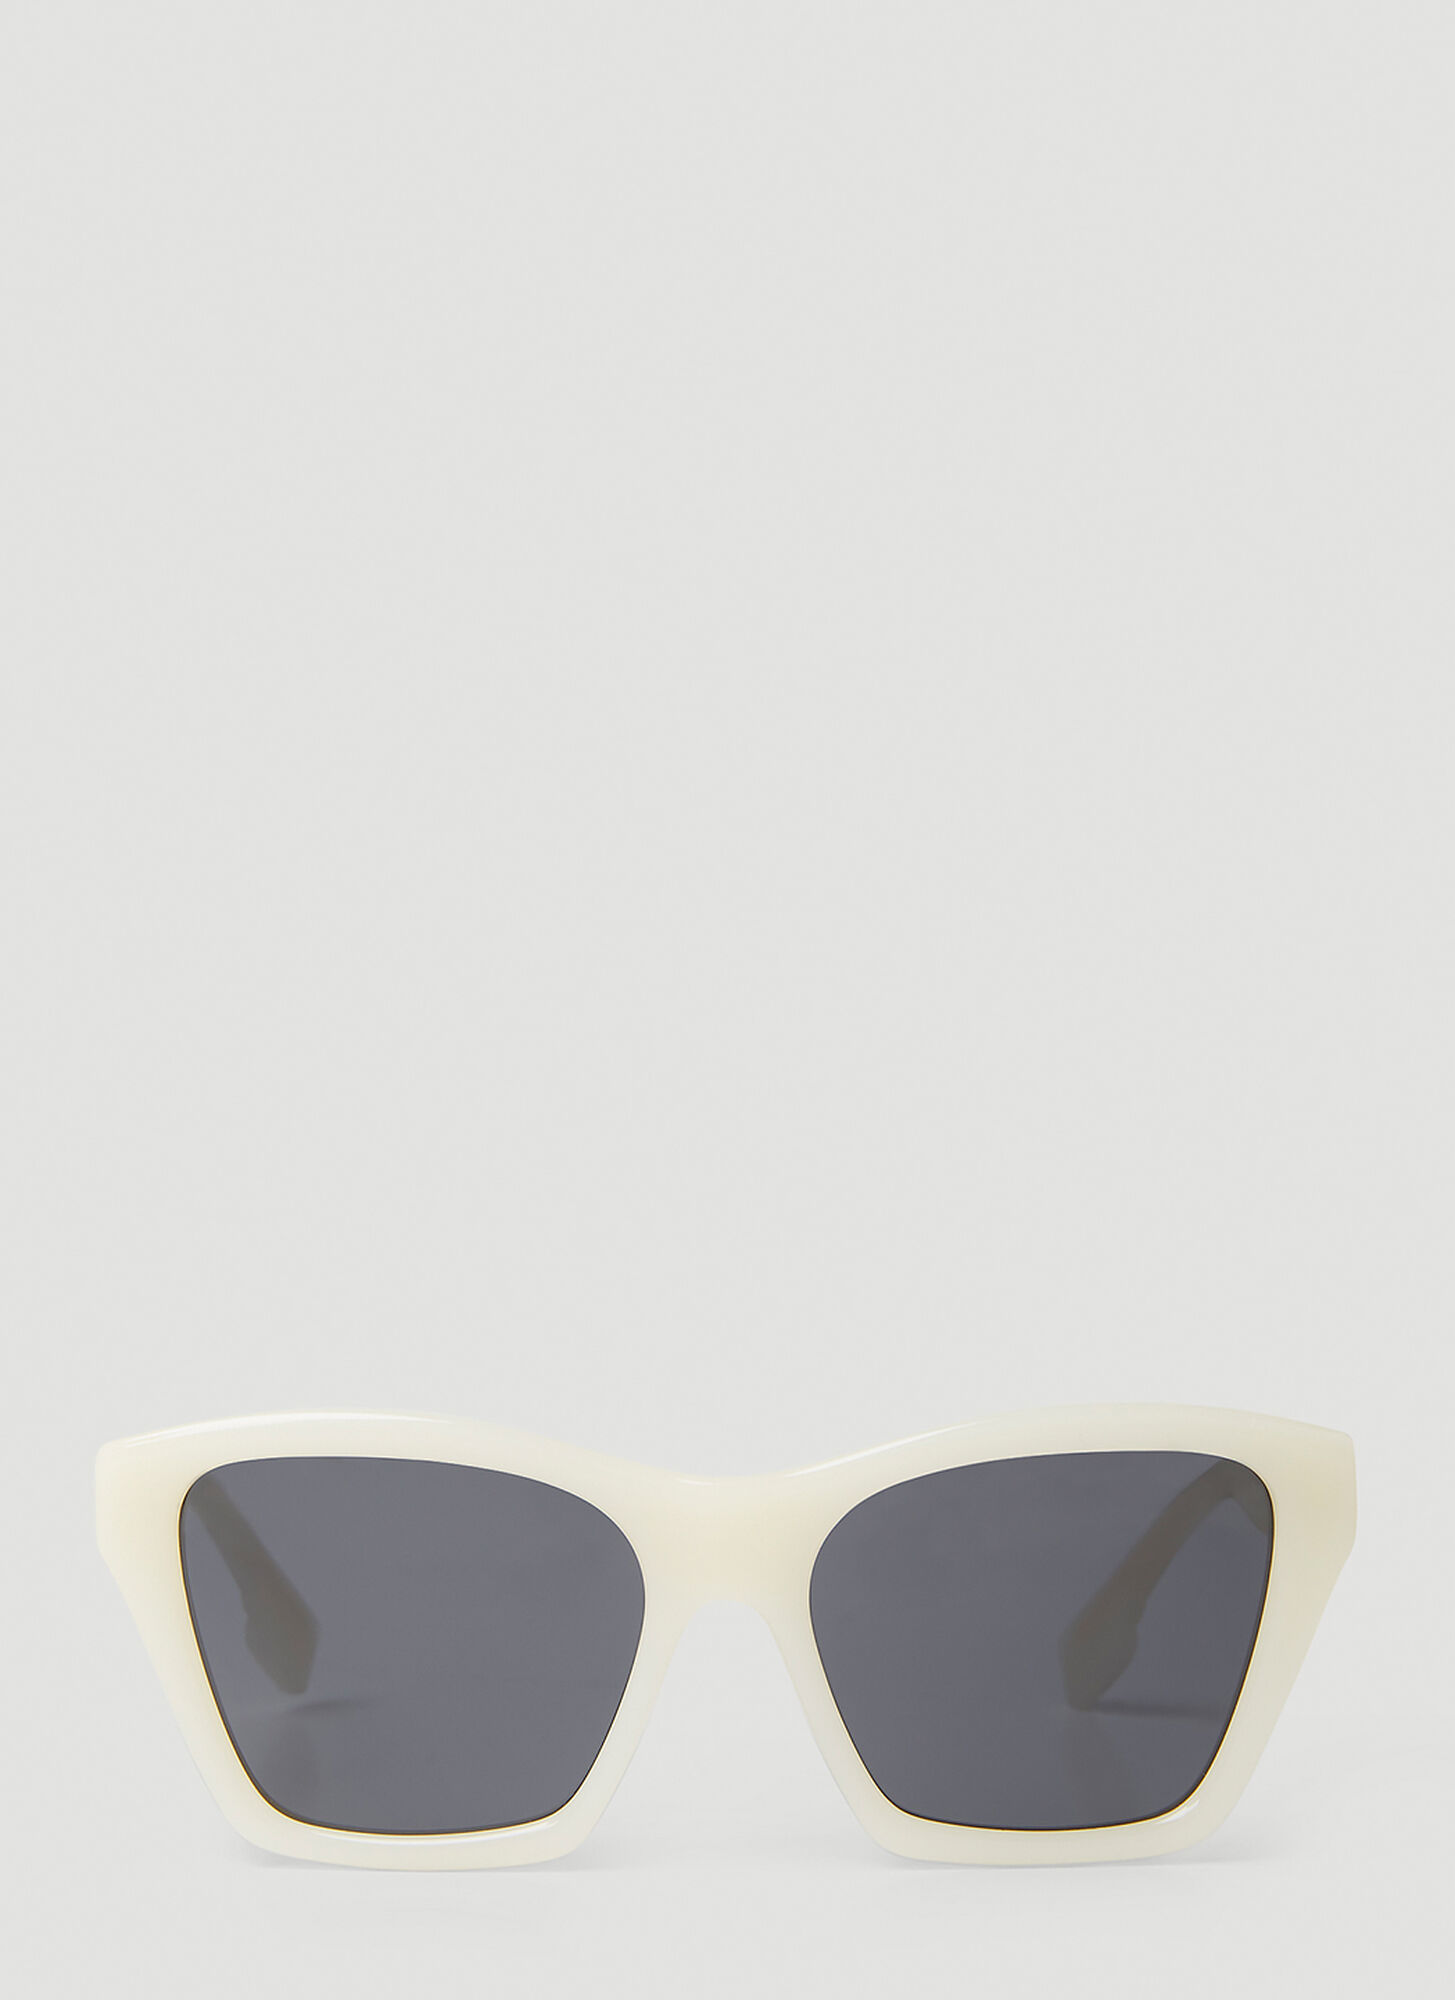 Burberry Arden Sunglasses In White